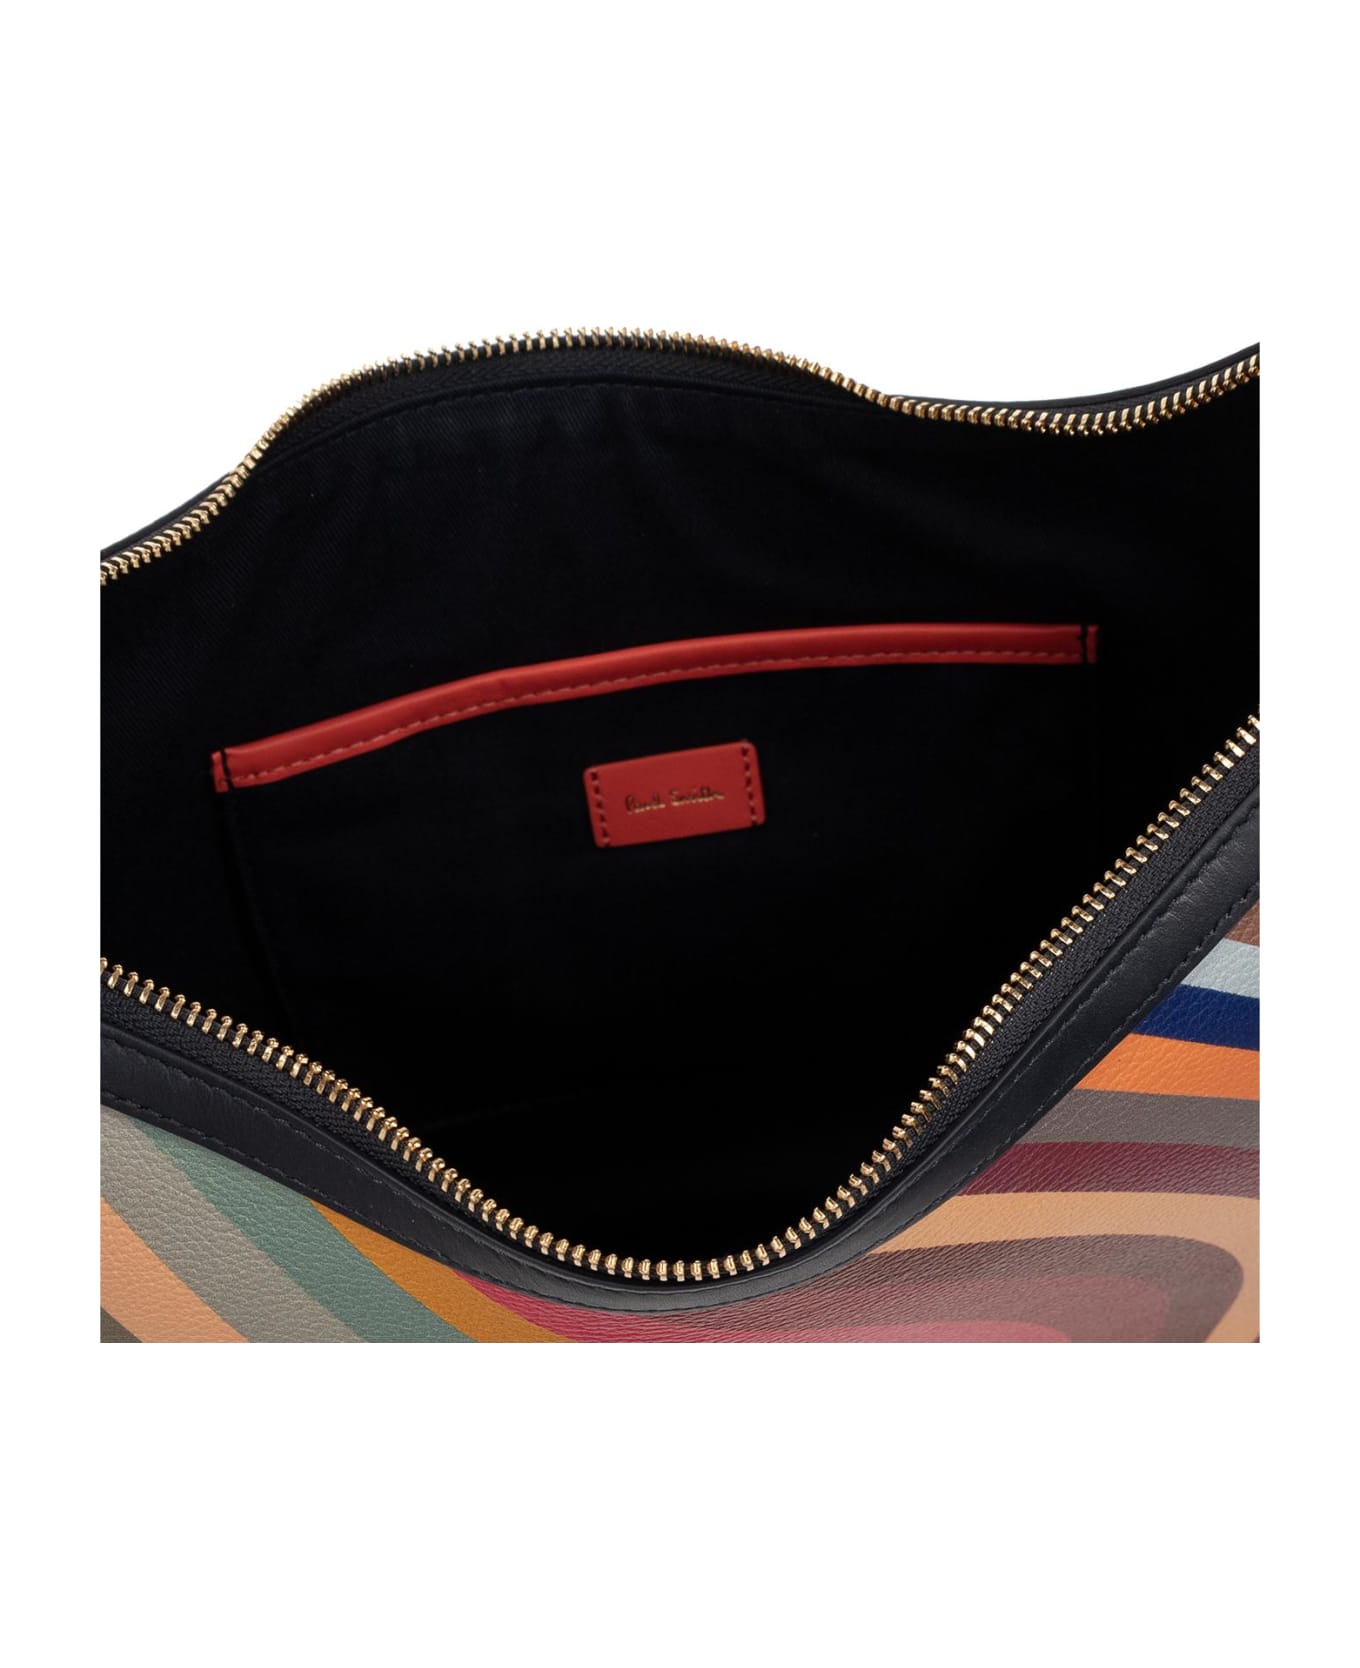 Paul Smith Shoulder Bag - Multicolor